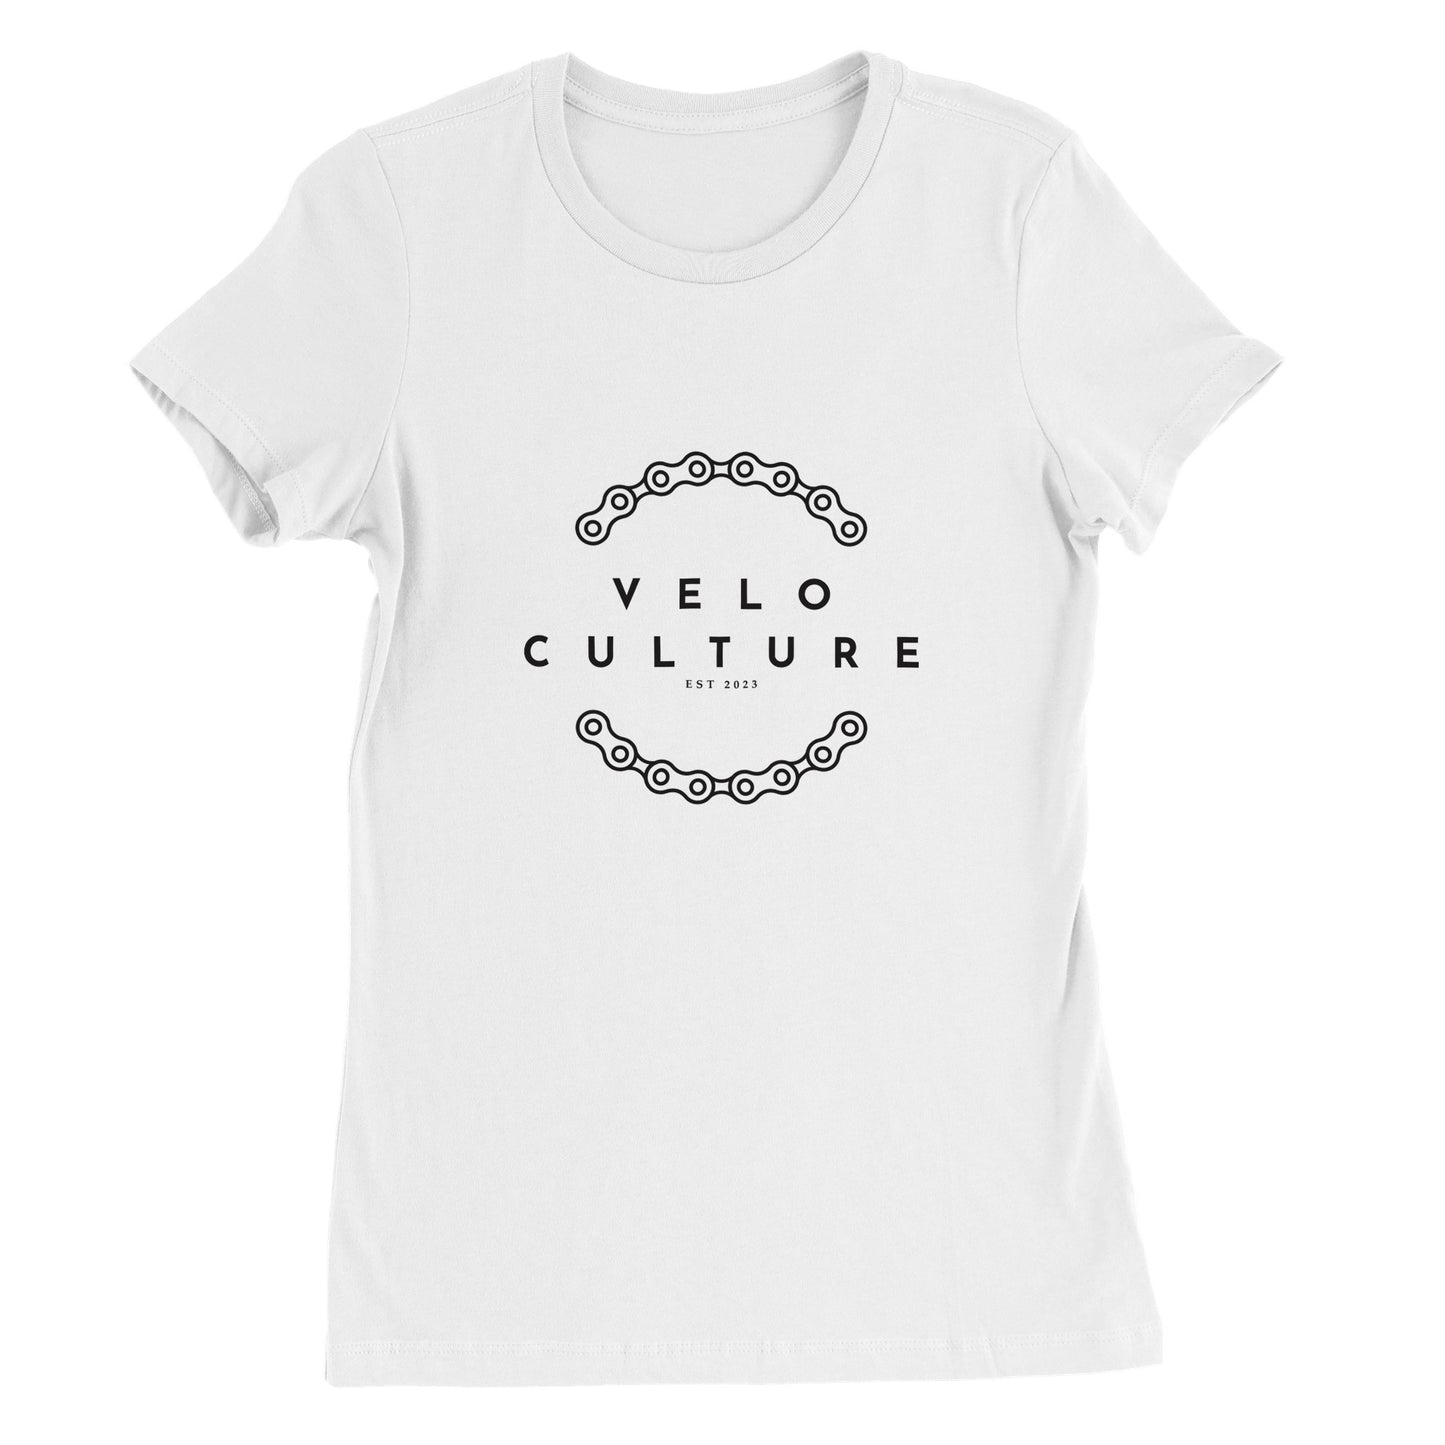 VeloCulture Premium Womens Crewneck T-shirt